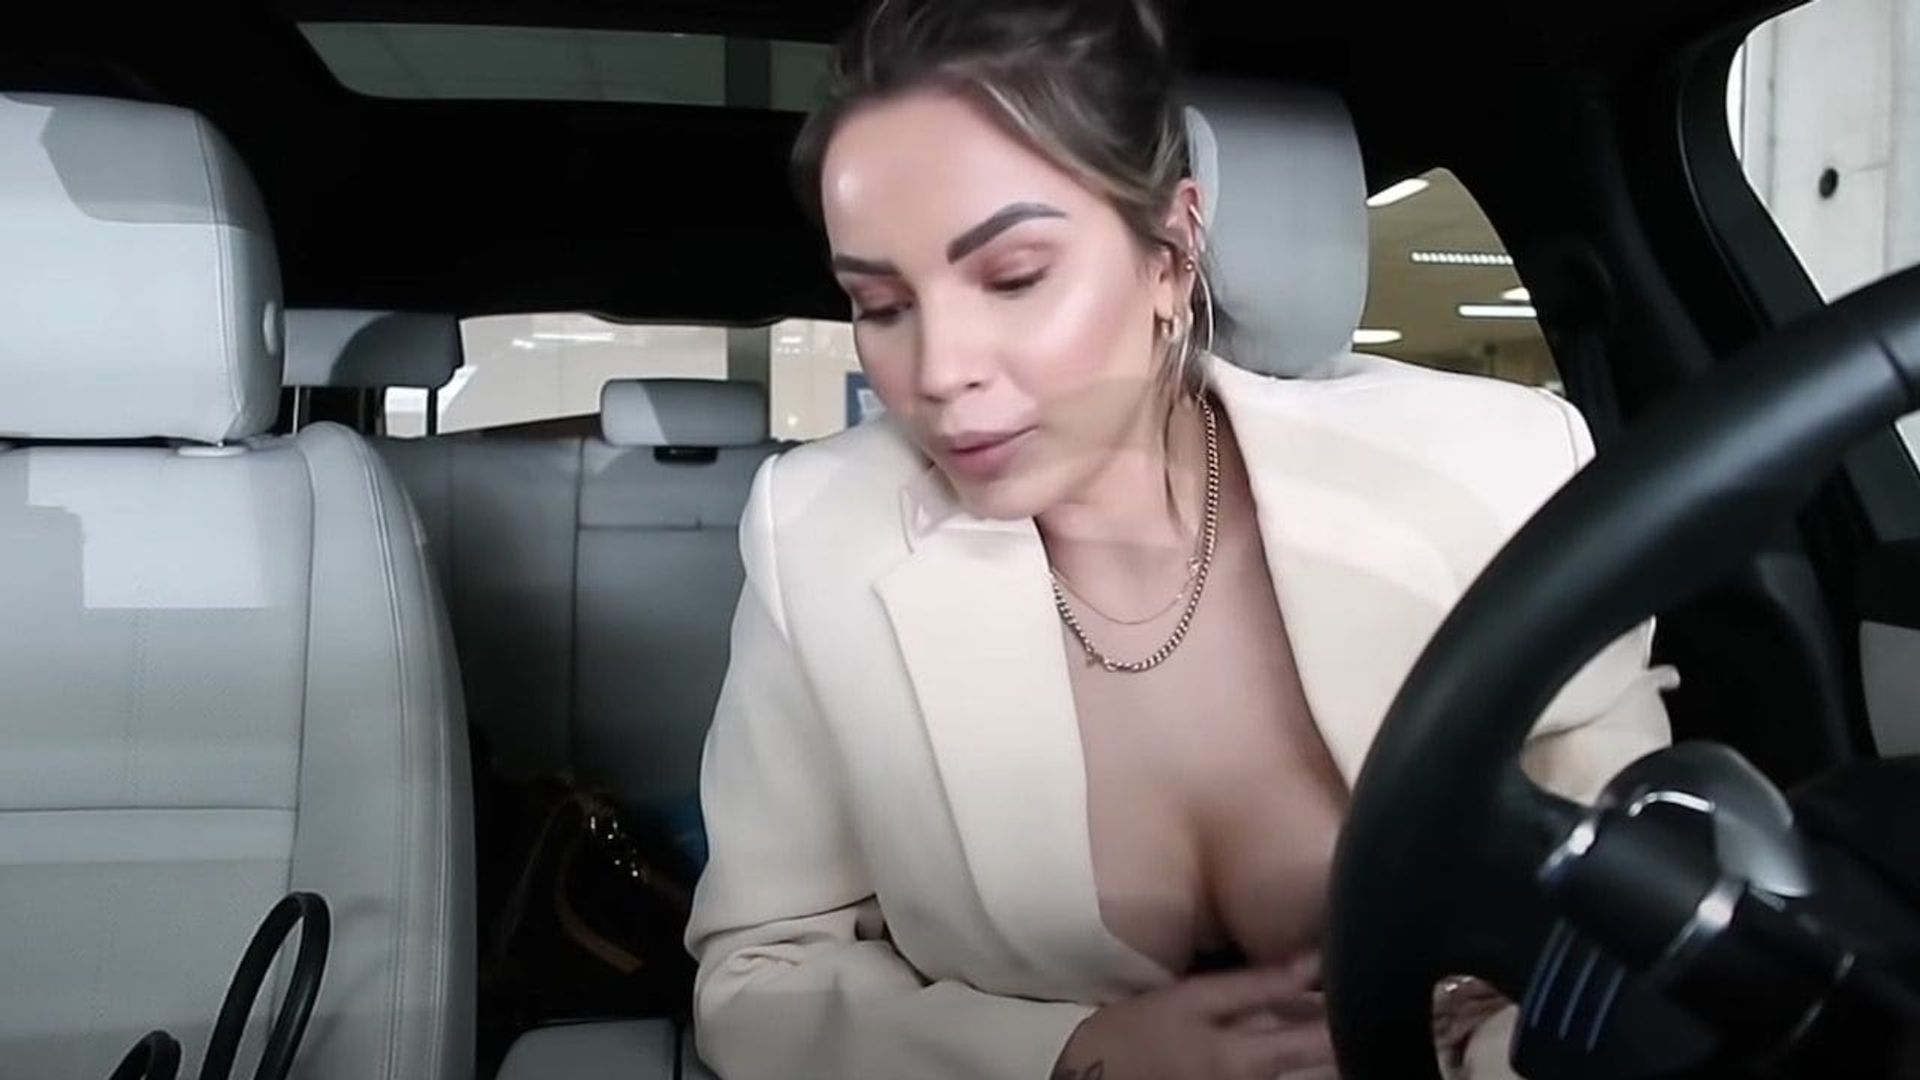 Monica Geuze flasht boobs in nieuwe vlog | roddelpraat Nieuws